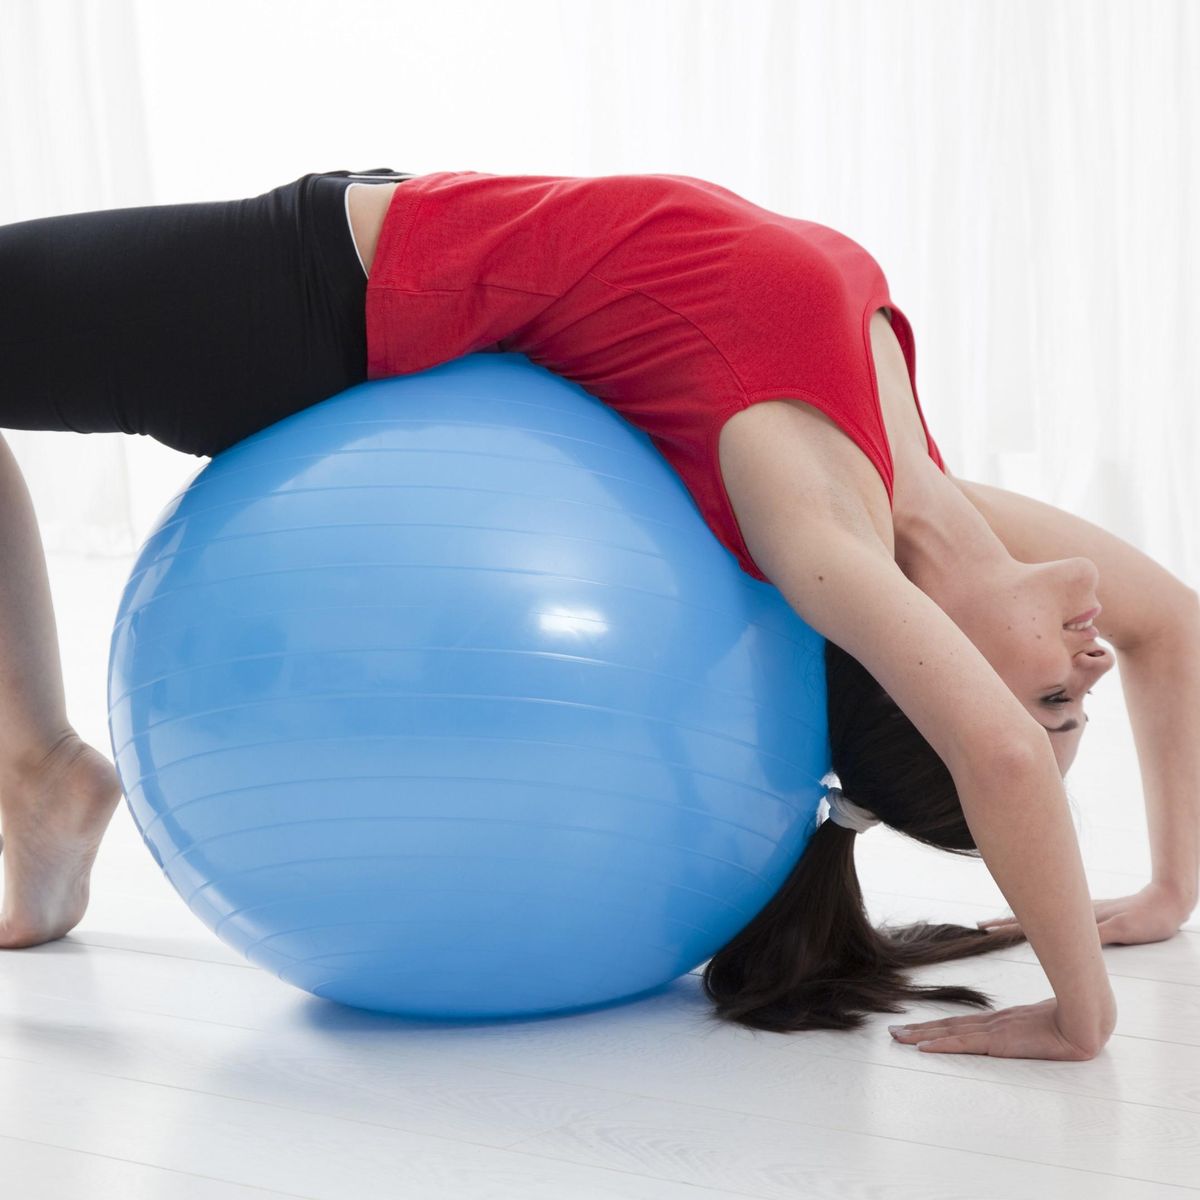 Los ejercicios para reforzar abdominales, piernas y con una pelota